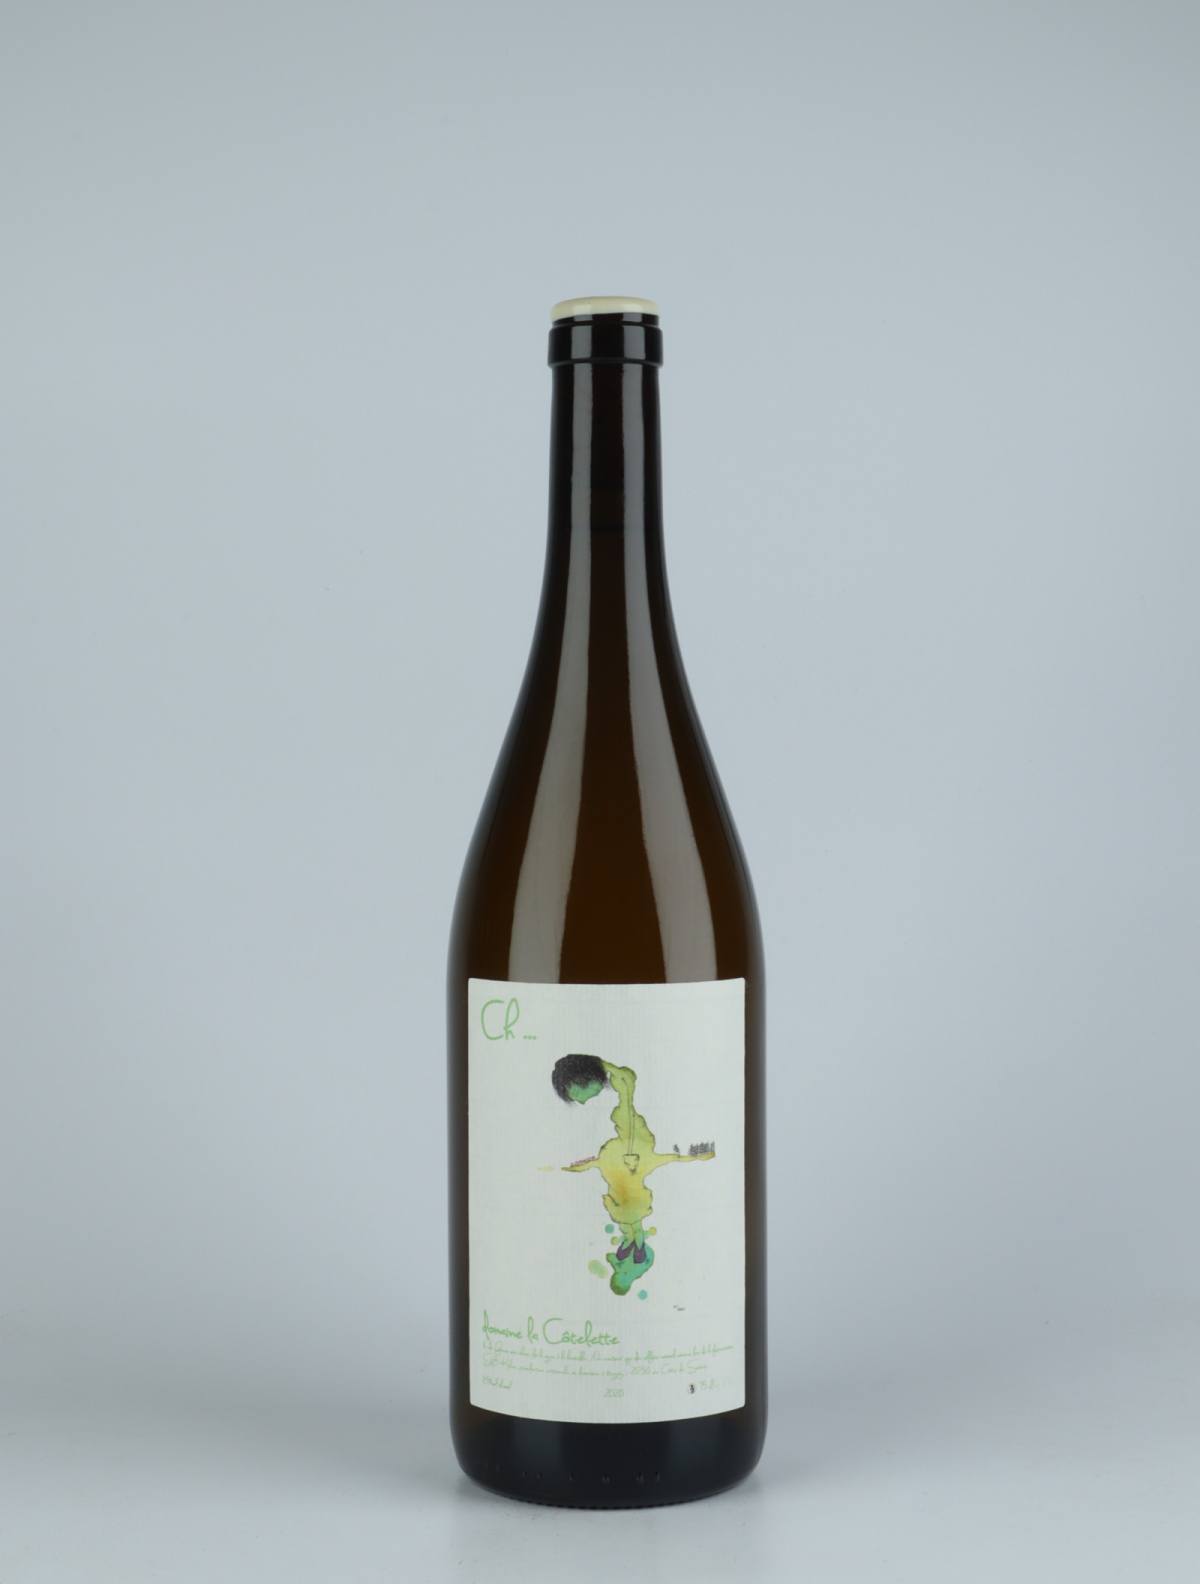 En flaske 2020 Ch... Hvidvin fra Domaine La Côtelette, Bourgogne i Frankrig